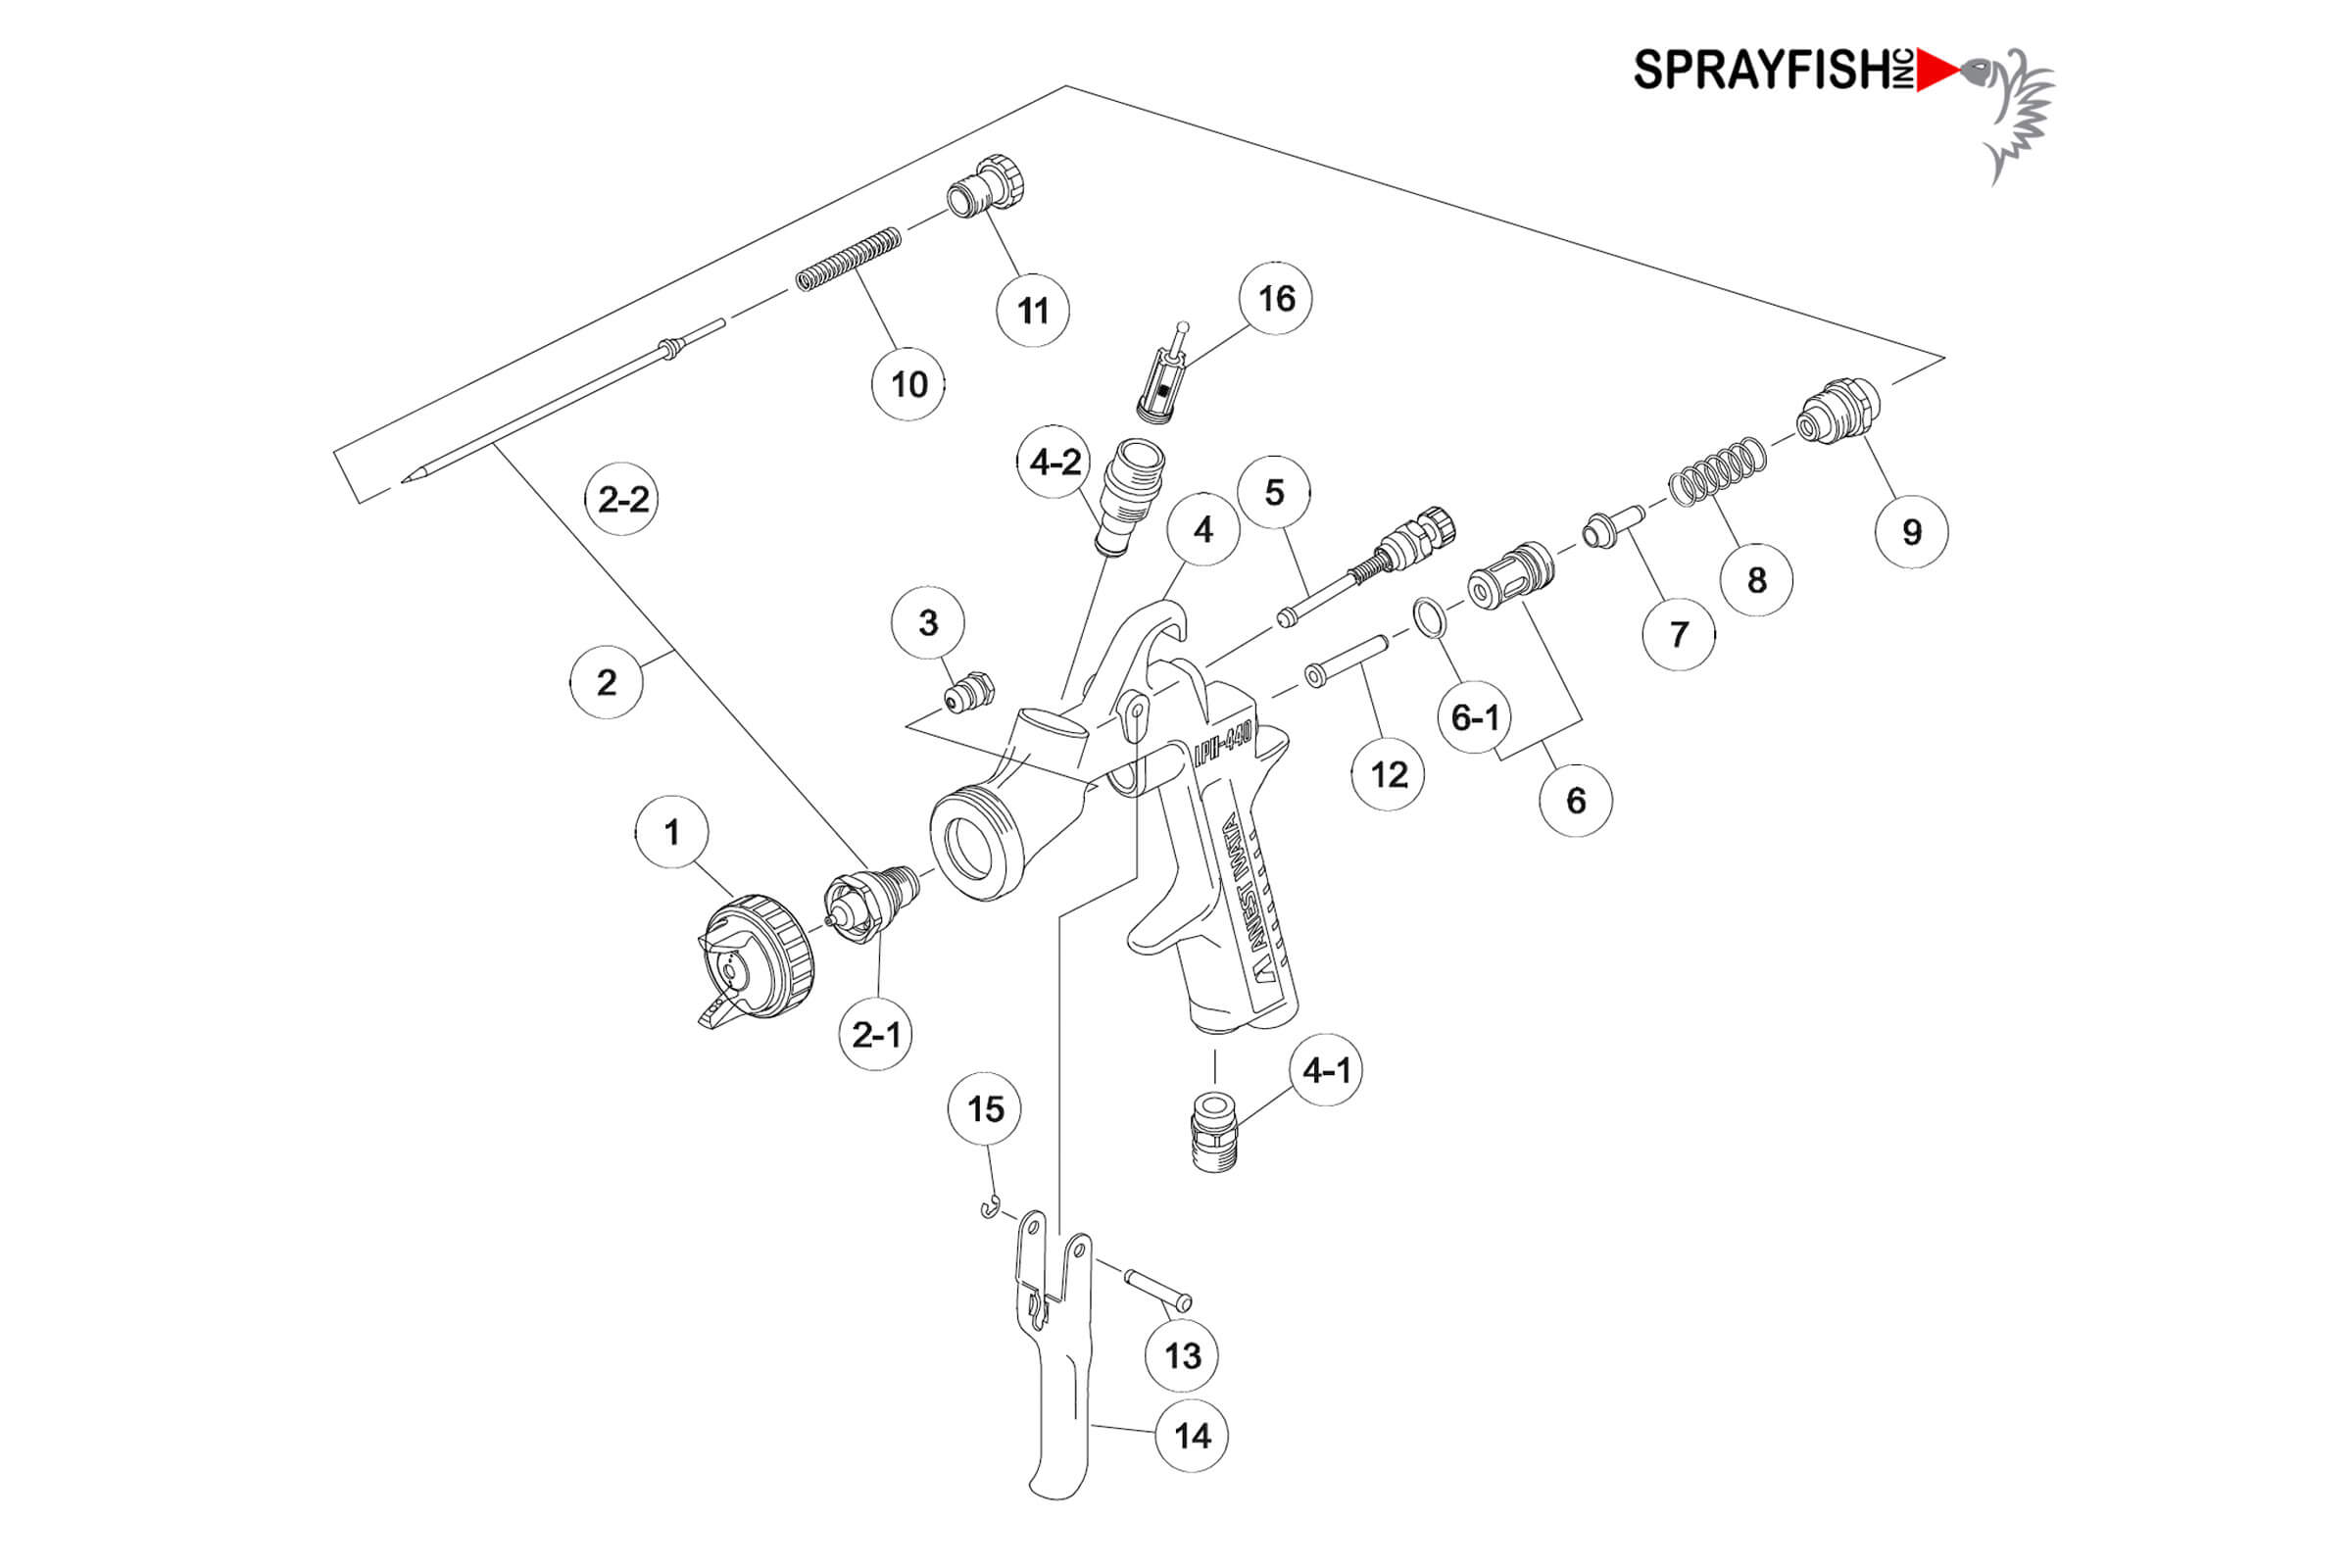 Anest Iwata LPH-440 Gravity Feed Primer Spray Gun Spare Parts Breakdown